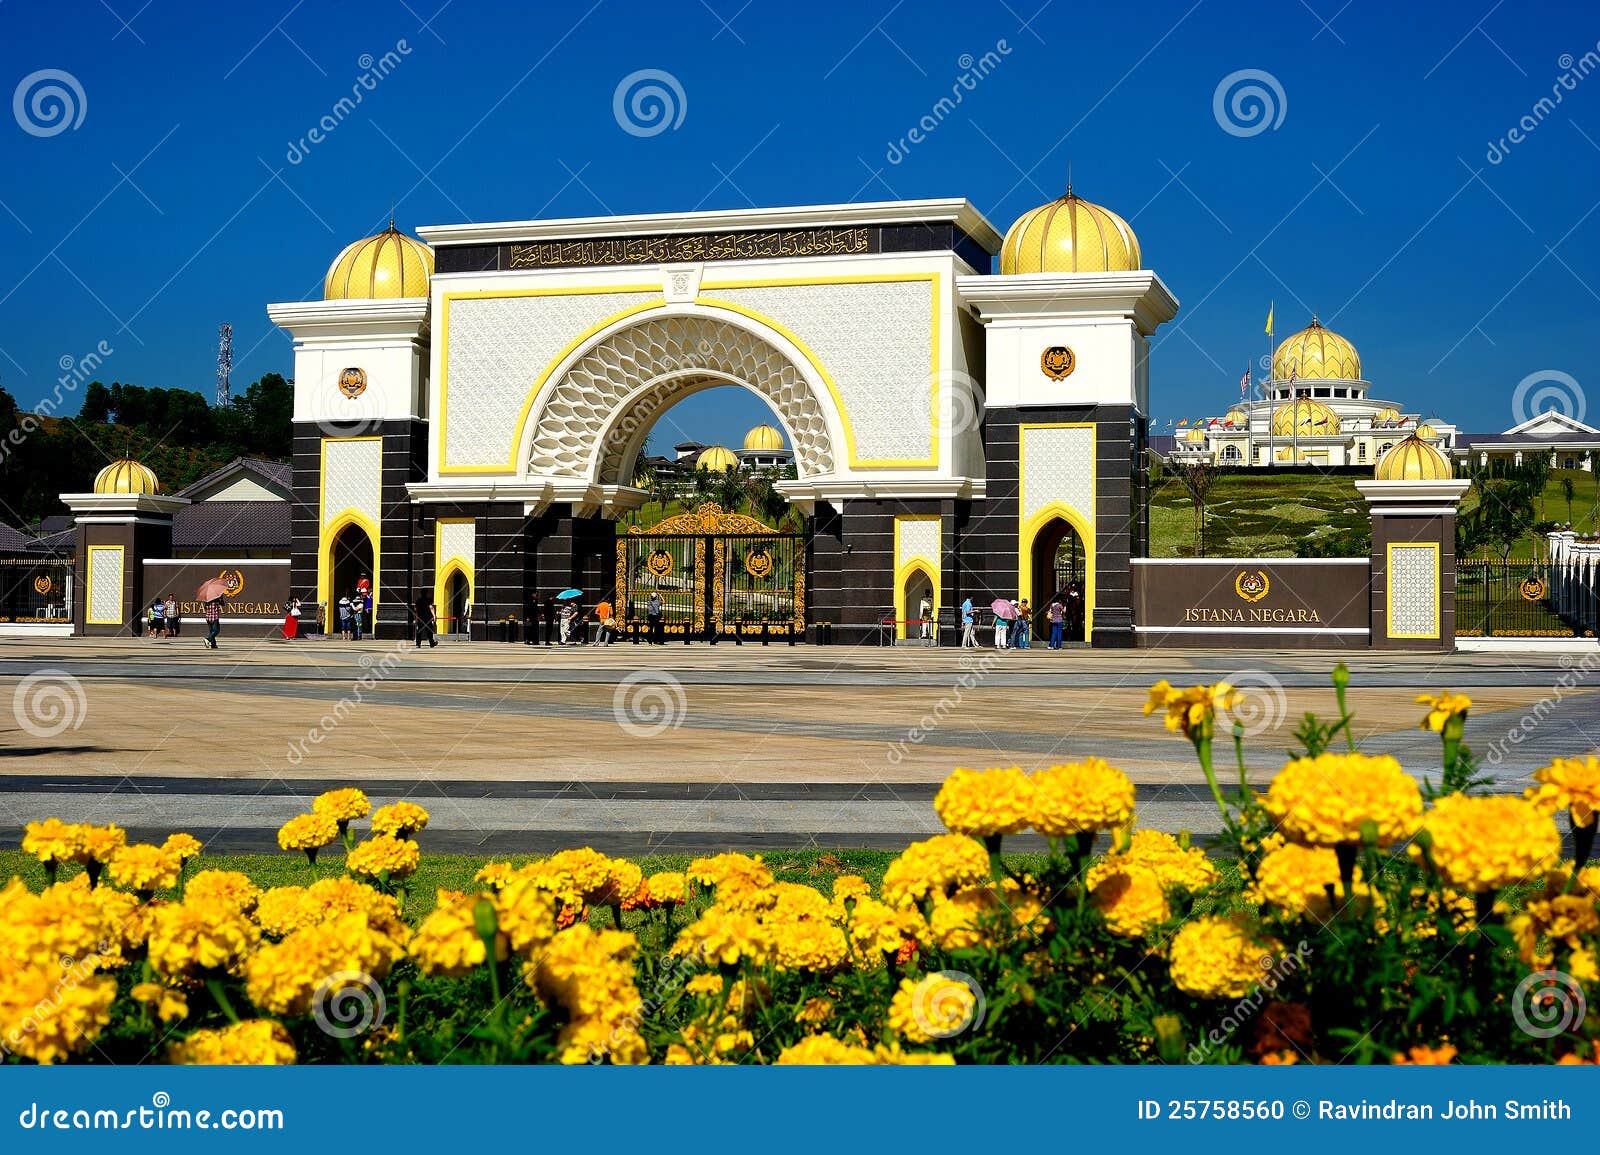 Stock Photo Istana Negara Image25758560